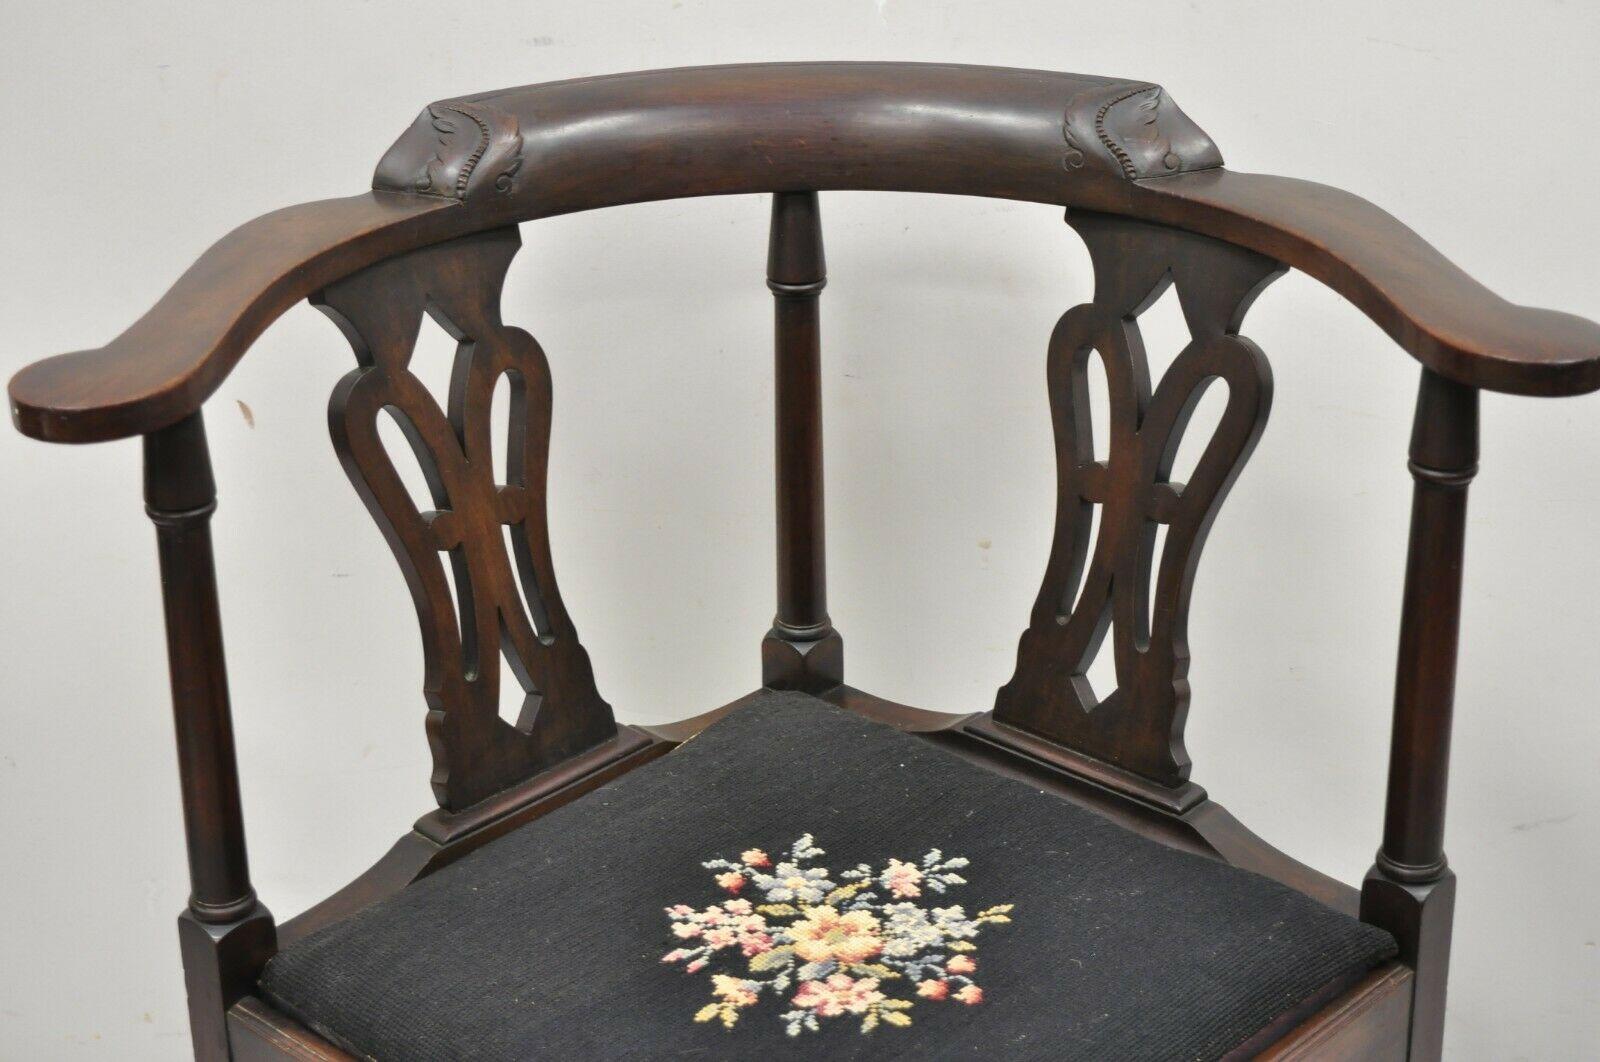 Antique chaise d'angle Chippendale anglaise de style géorgien en acajou avec boule et griffe. Cet article est doté d'un siège en point de croix, d'une construction en bois massif, de détails joliment sculptés, de pieds sculptés en forme de boule et